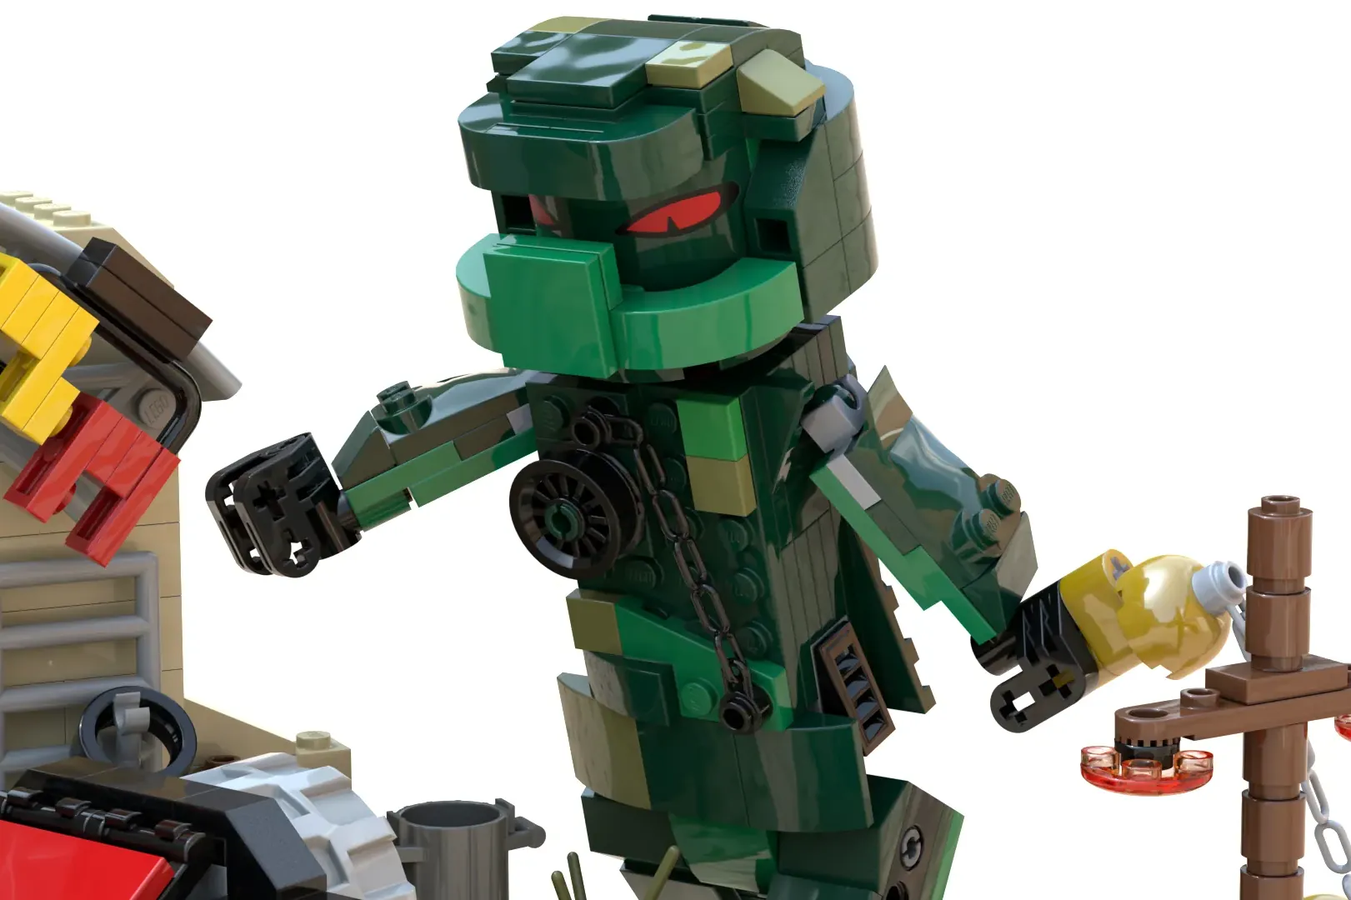 GAGNEZ une pièce rare de chien LEGO Husky mal imprimée avec Brick